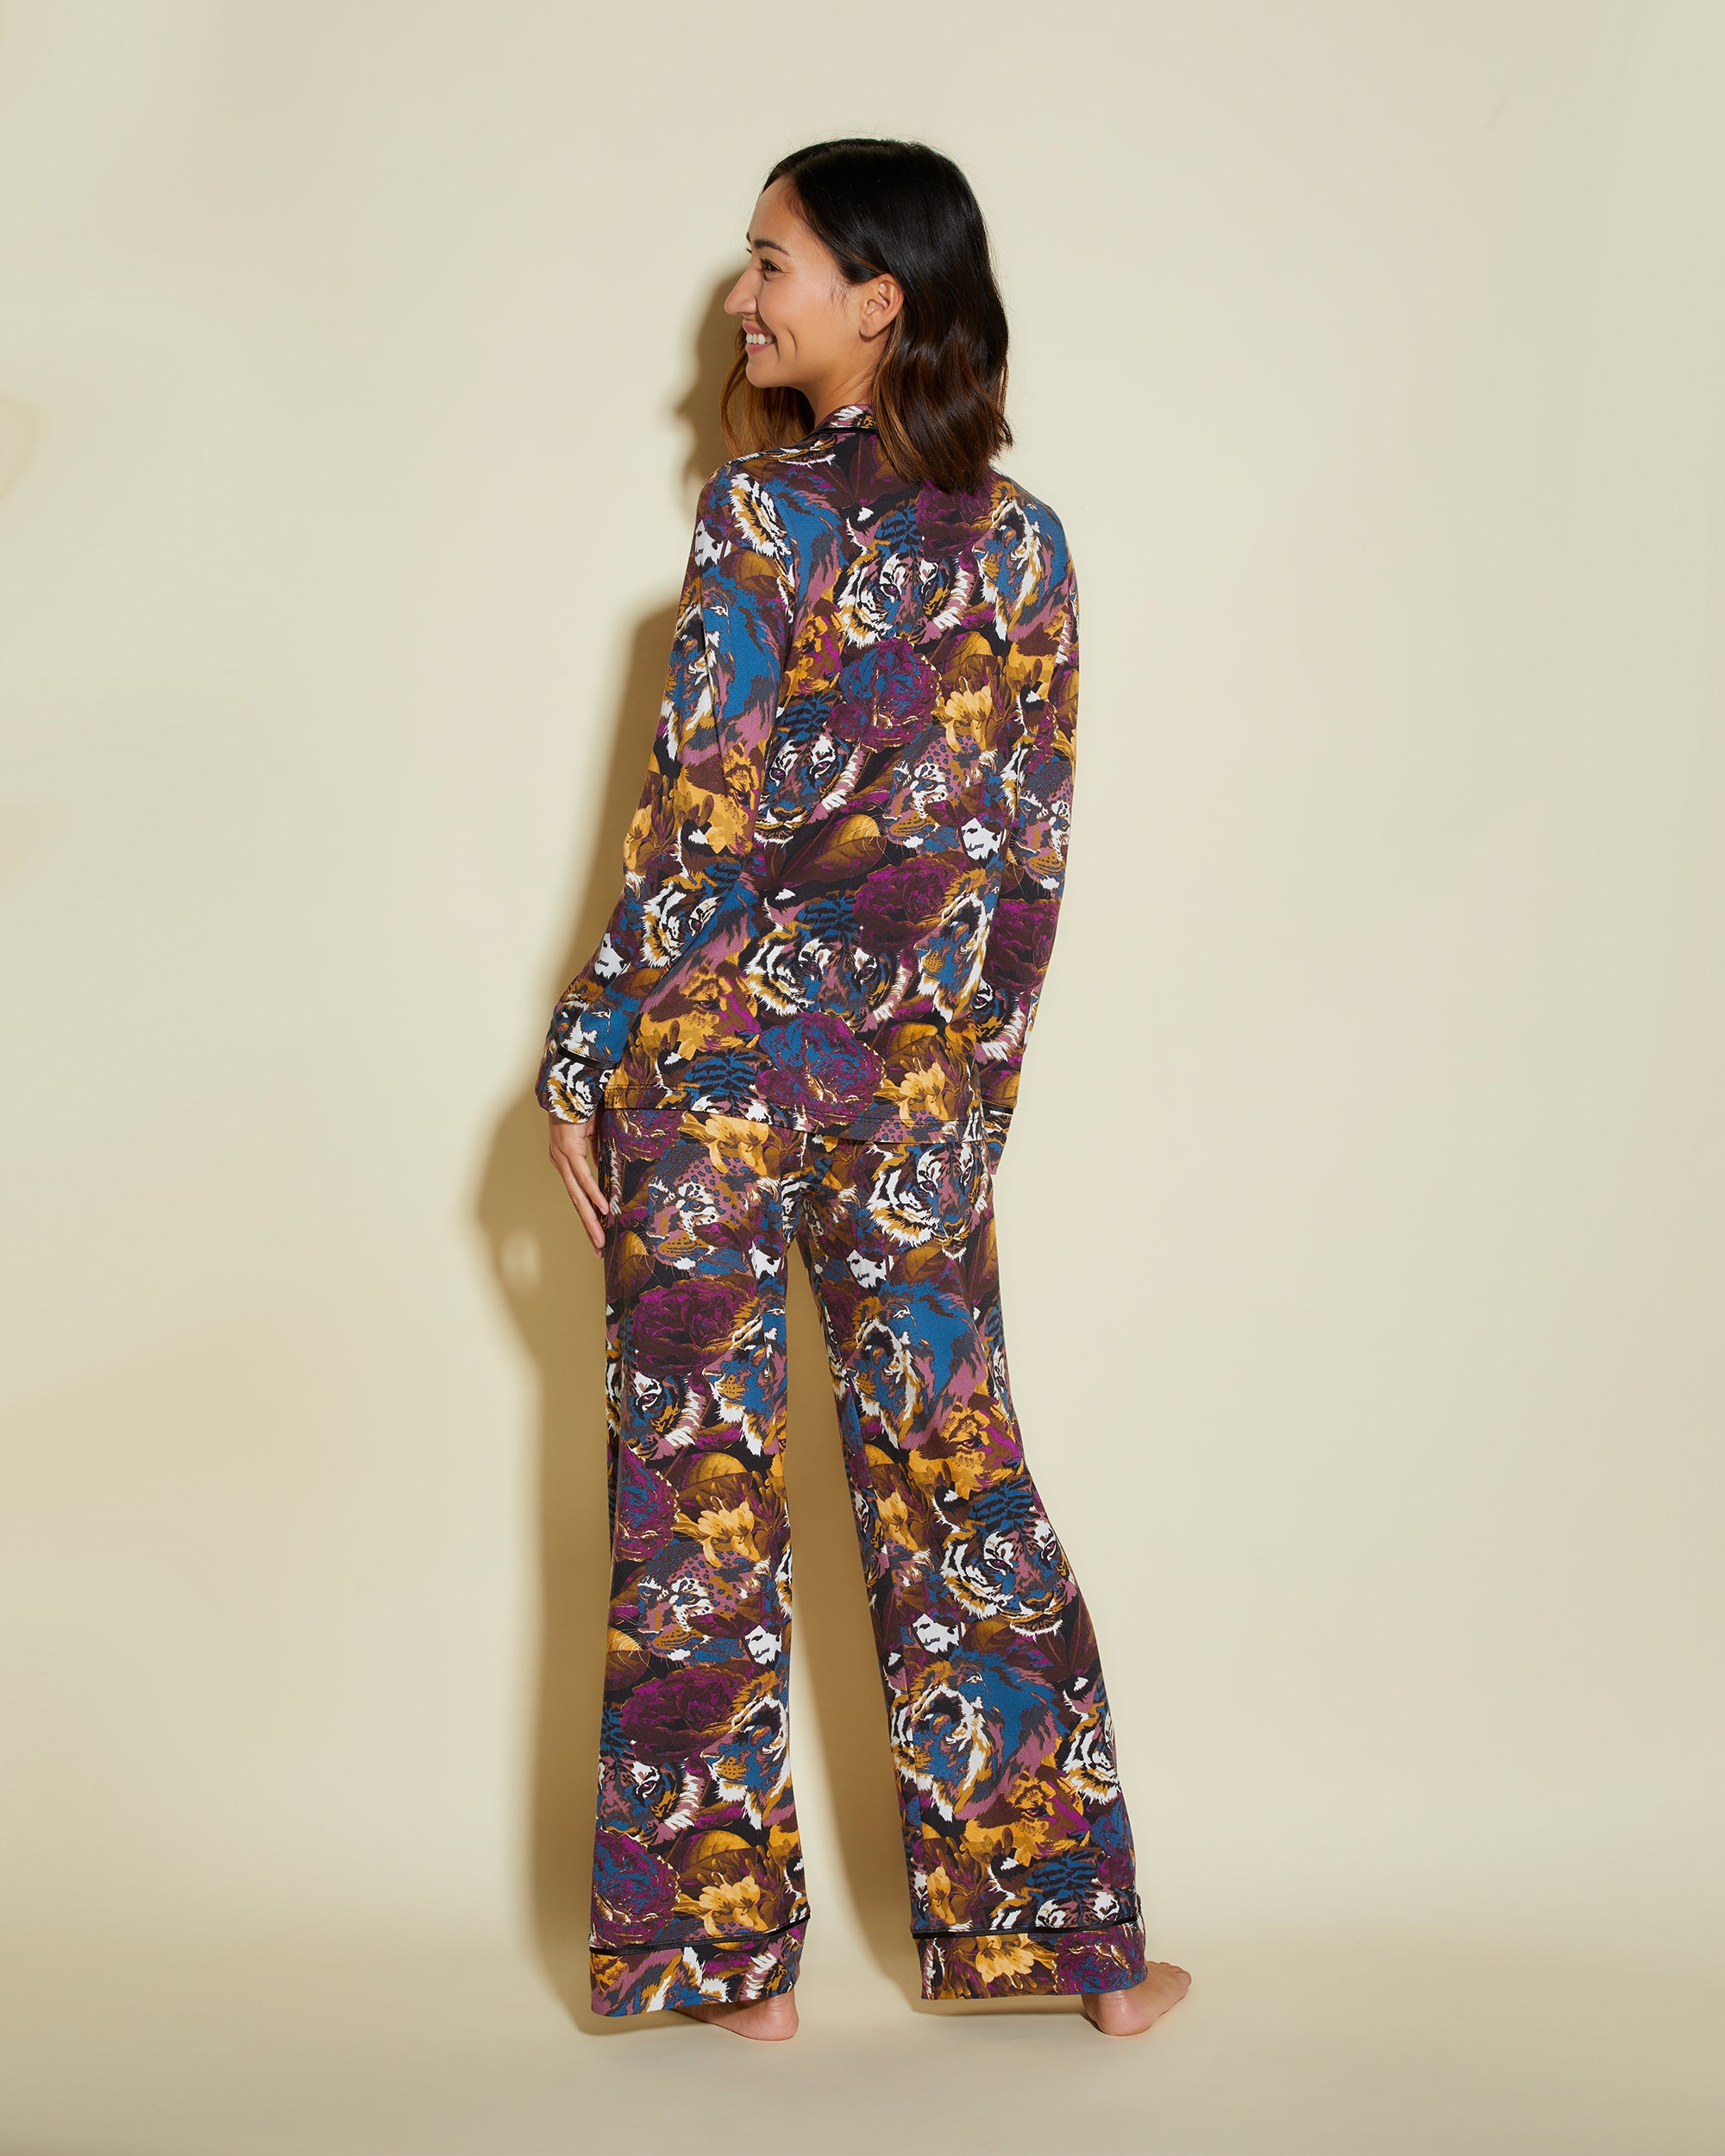 Cosabella | Bella Printed Petite Printed Long Sleeve Top & Pant Pajama Set  | Sale